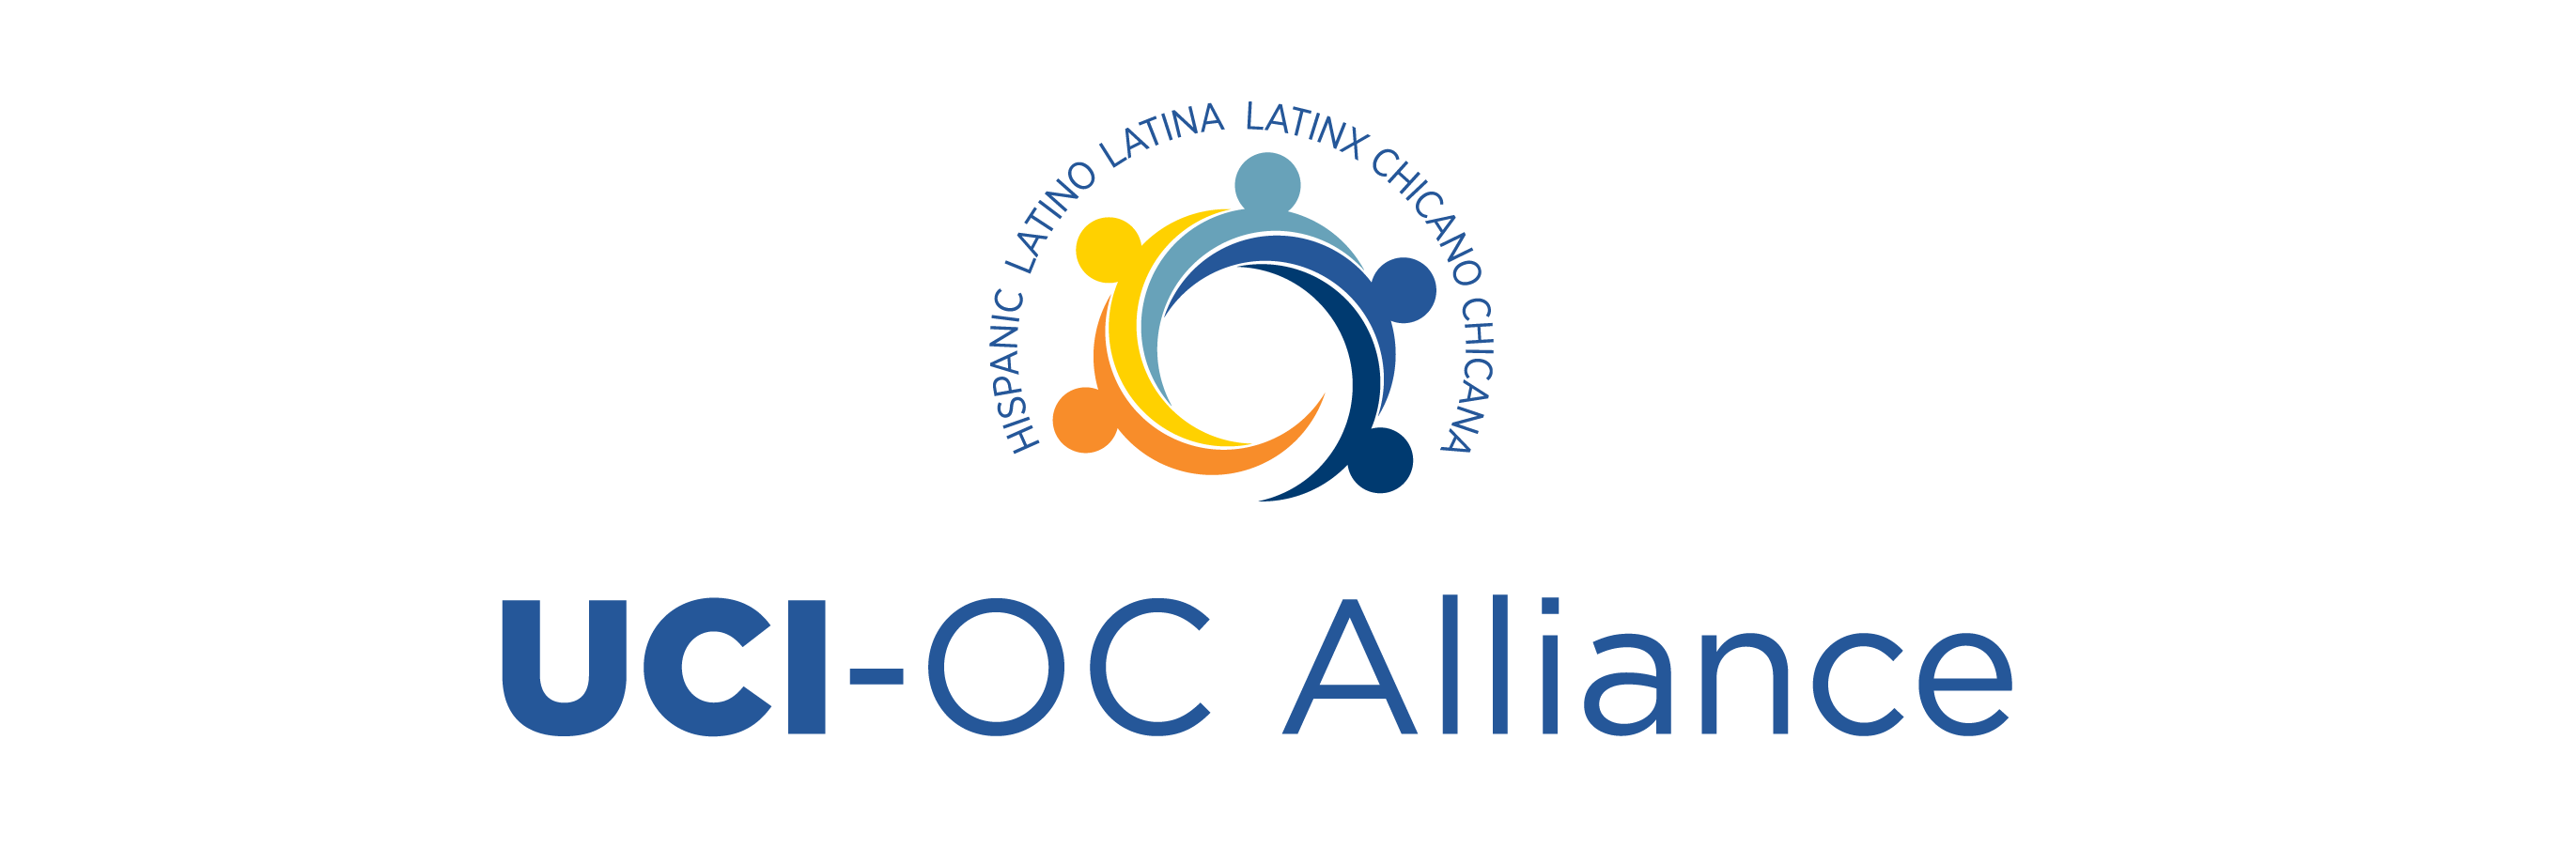 UCI-OC Alliance. hispanic latino latina latinx chicano chicana